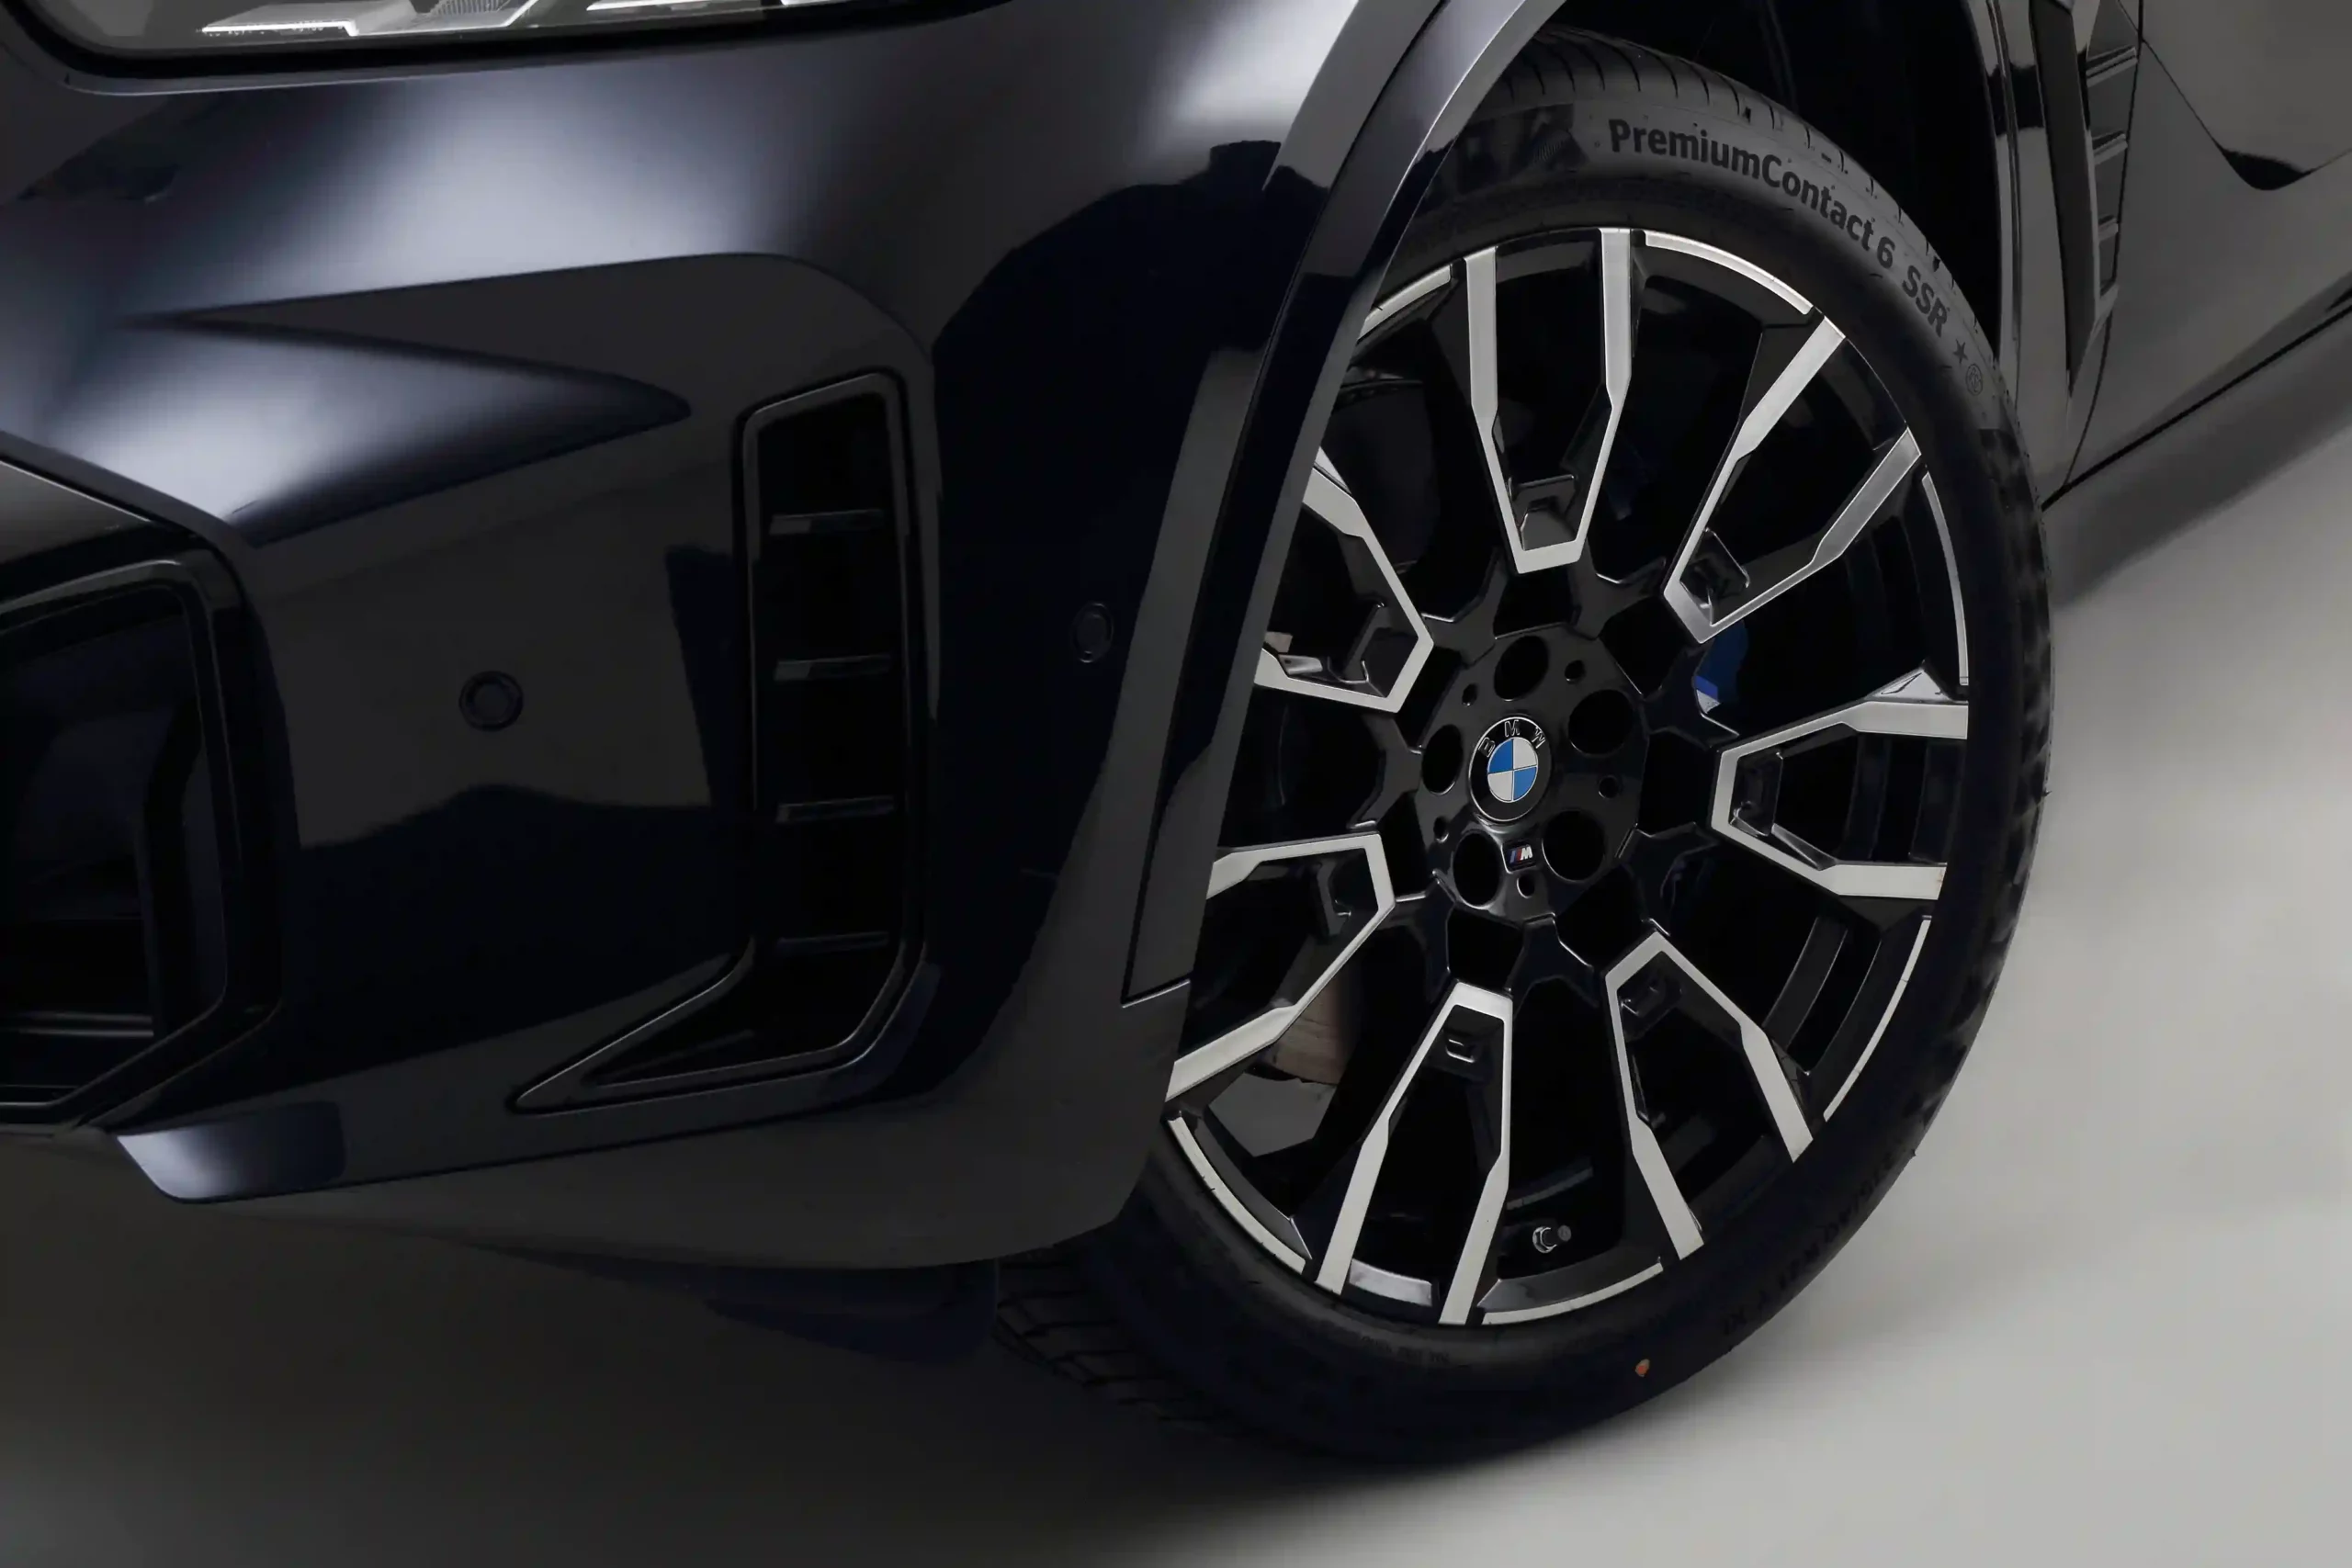 Sleek look with 21-inch alloy wheels.